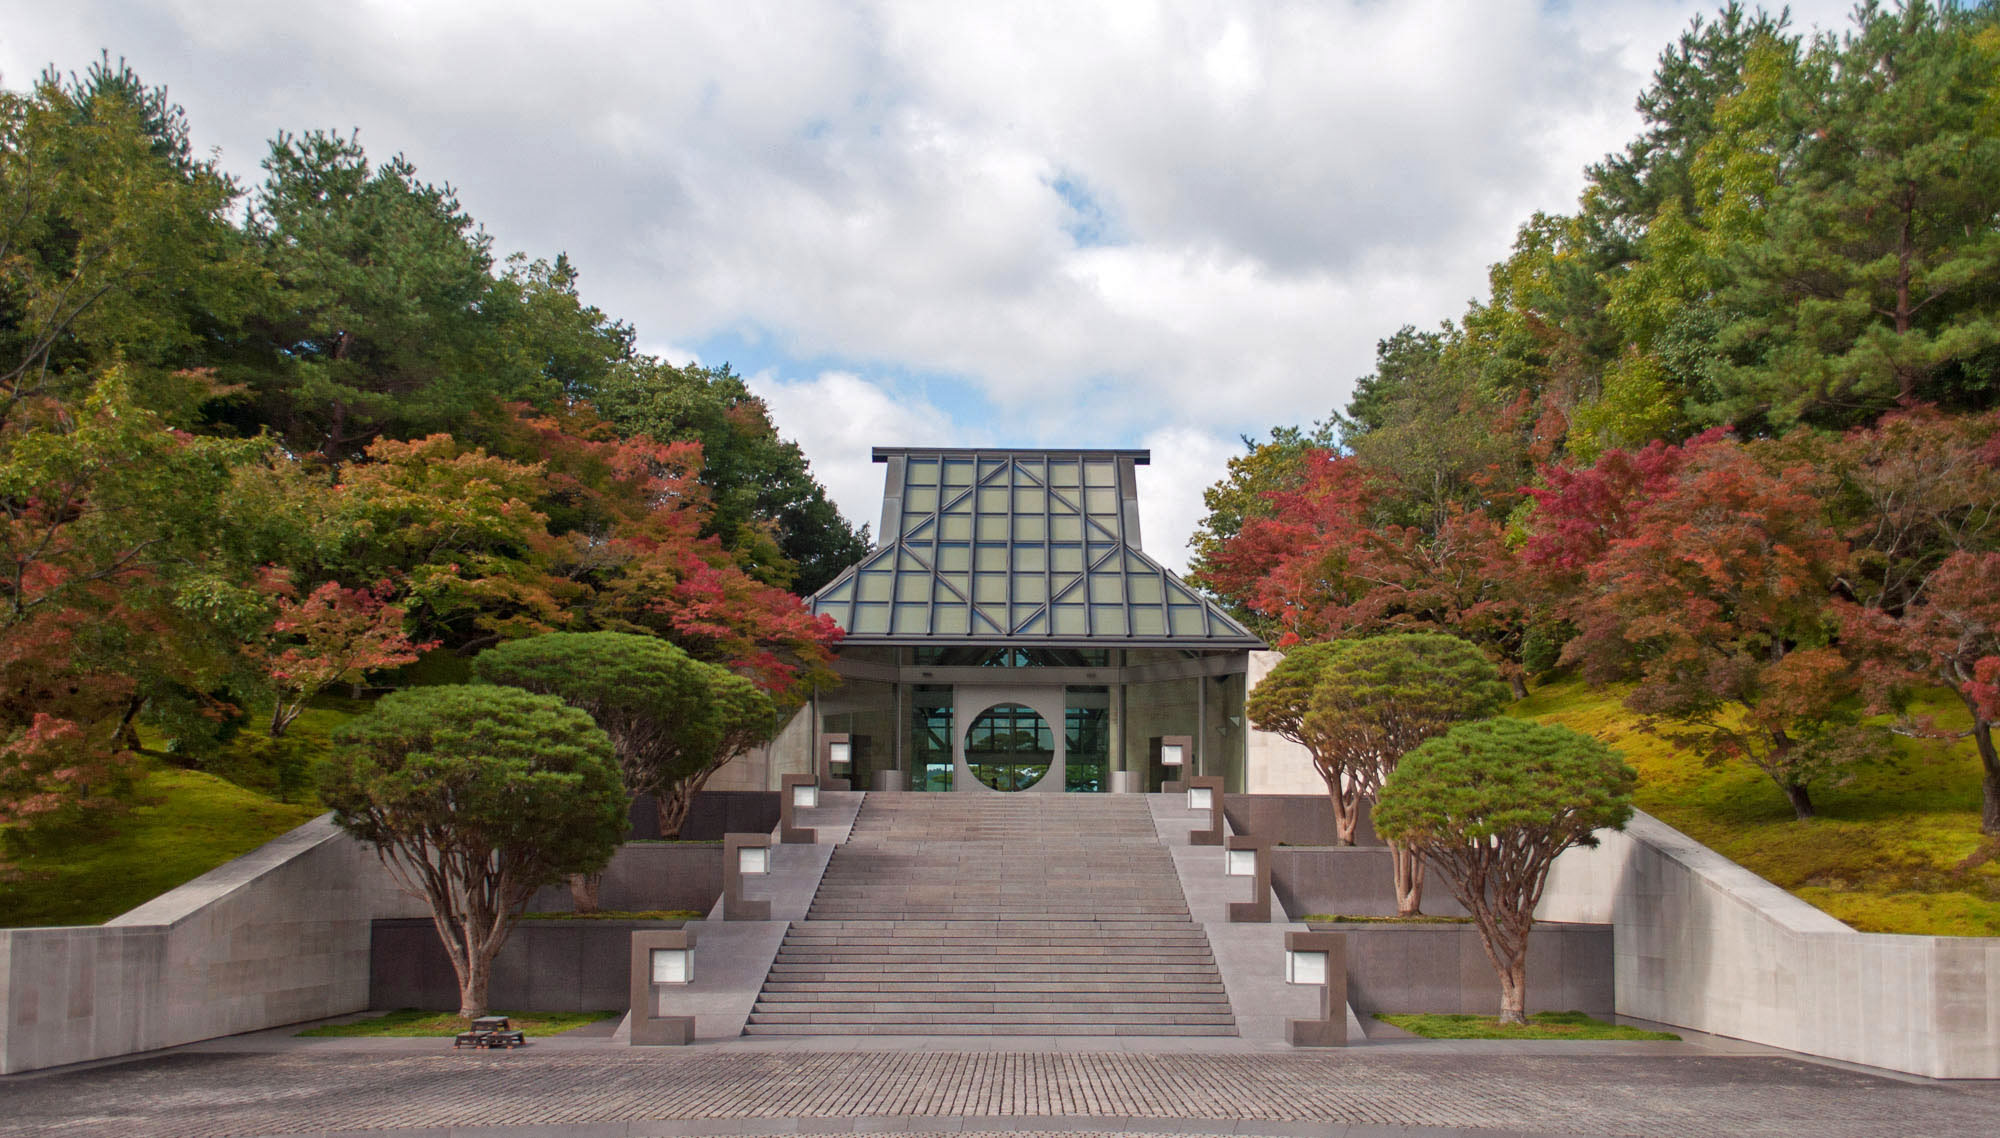 Miho Museum / I.M. Pei